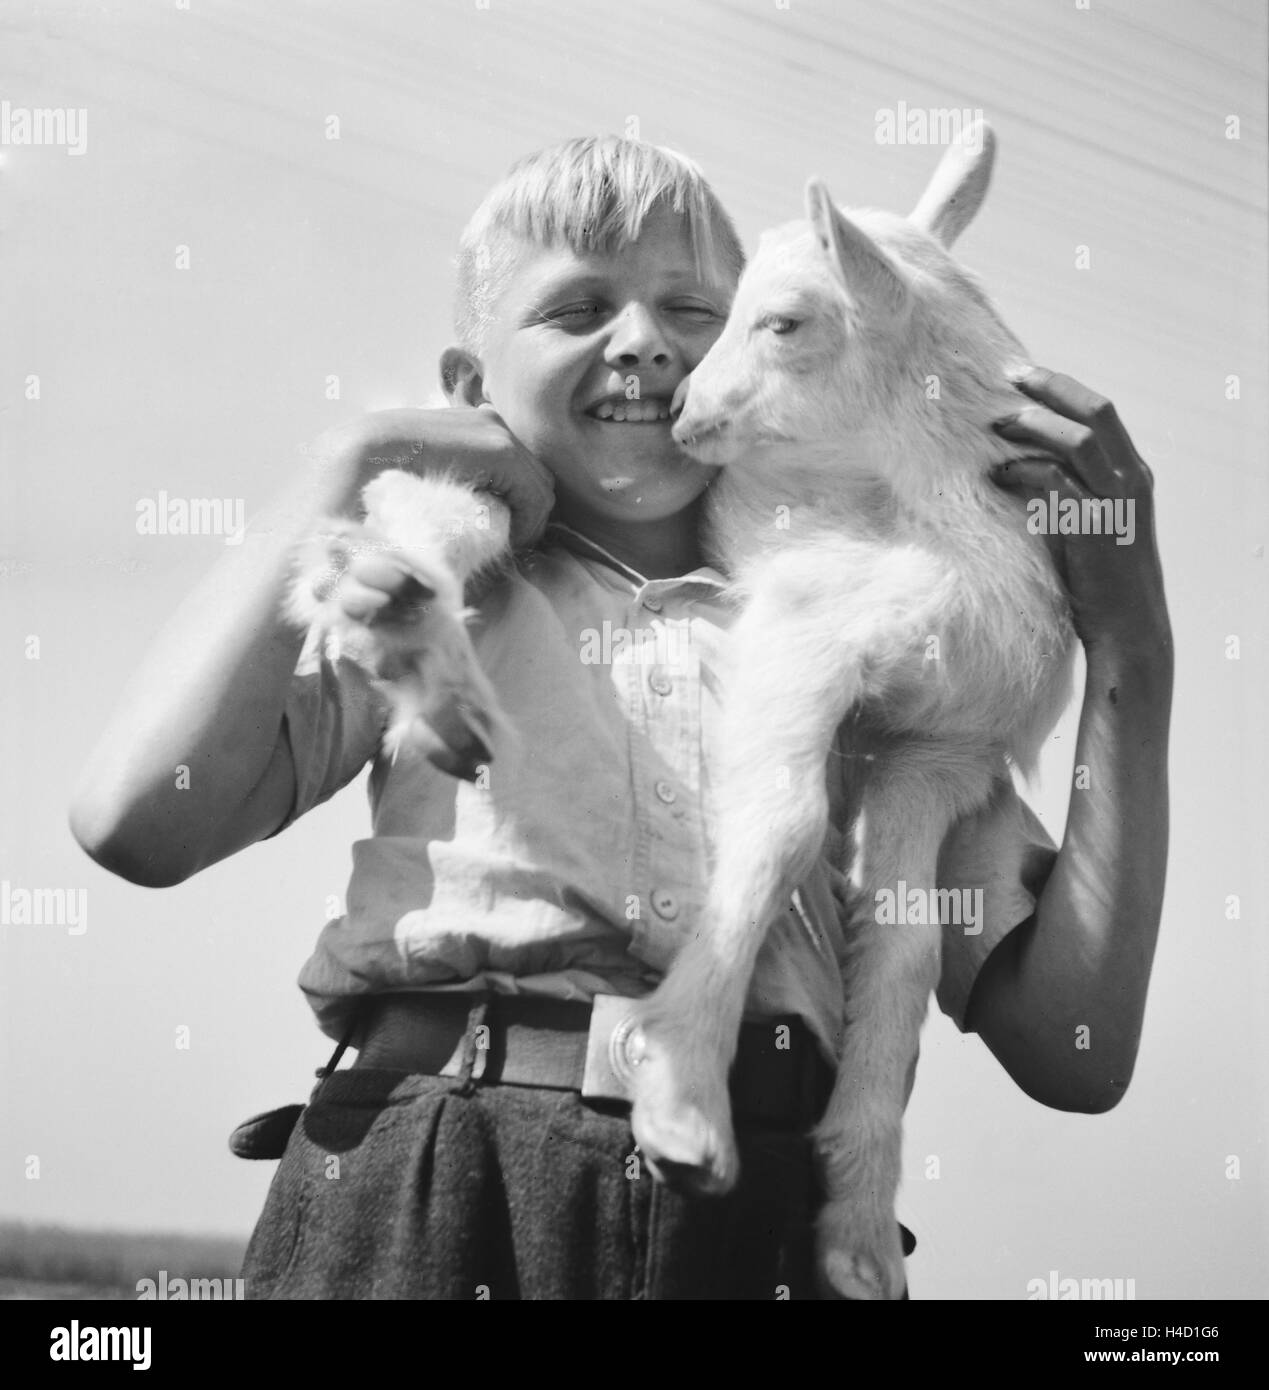 Kinder spielen mit einem Lamm, Deutschland 1930er Jahre. Children playing with a little lamb, Germany 1930s. Stock Photo